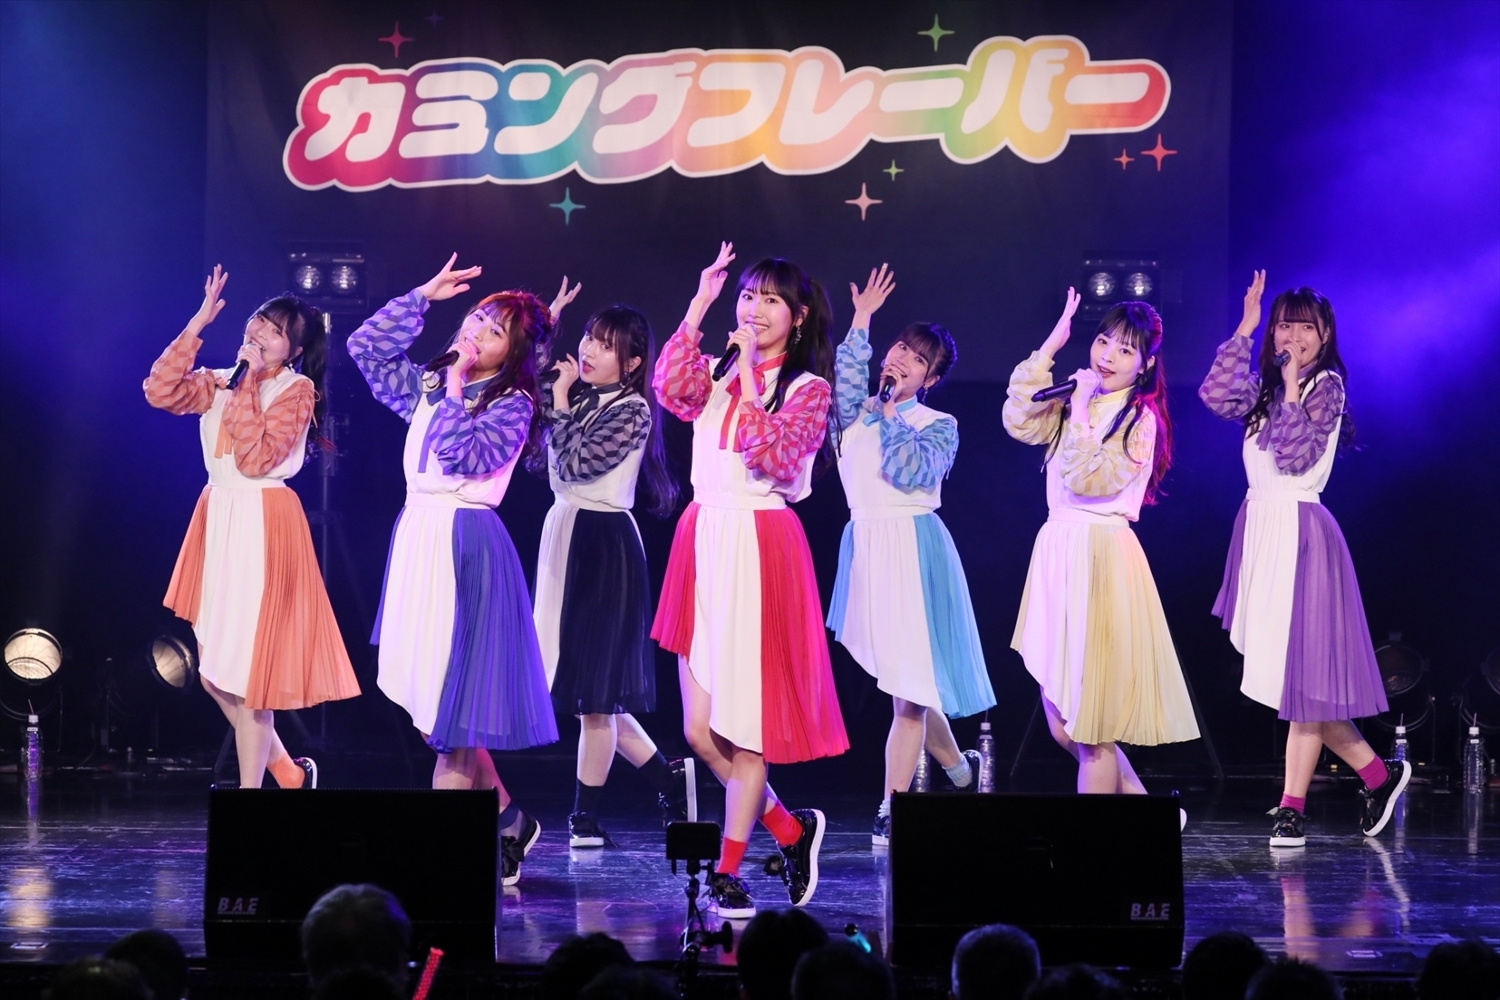 前列左からHINANO(青)、MIYO(赤) 後列左からENA(橙)、KIMIE(黒)、MIZUKI(水色)、YU-KI(黄)、AIRI(紫) (C)2021 Zest, inc.